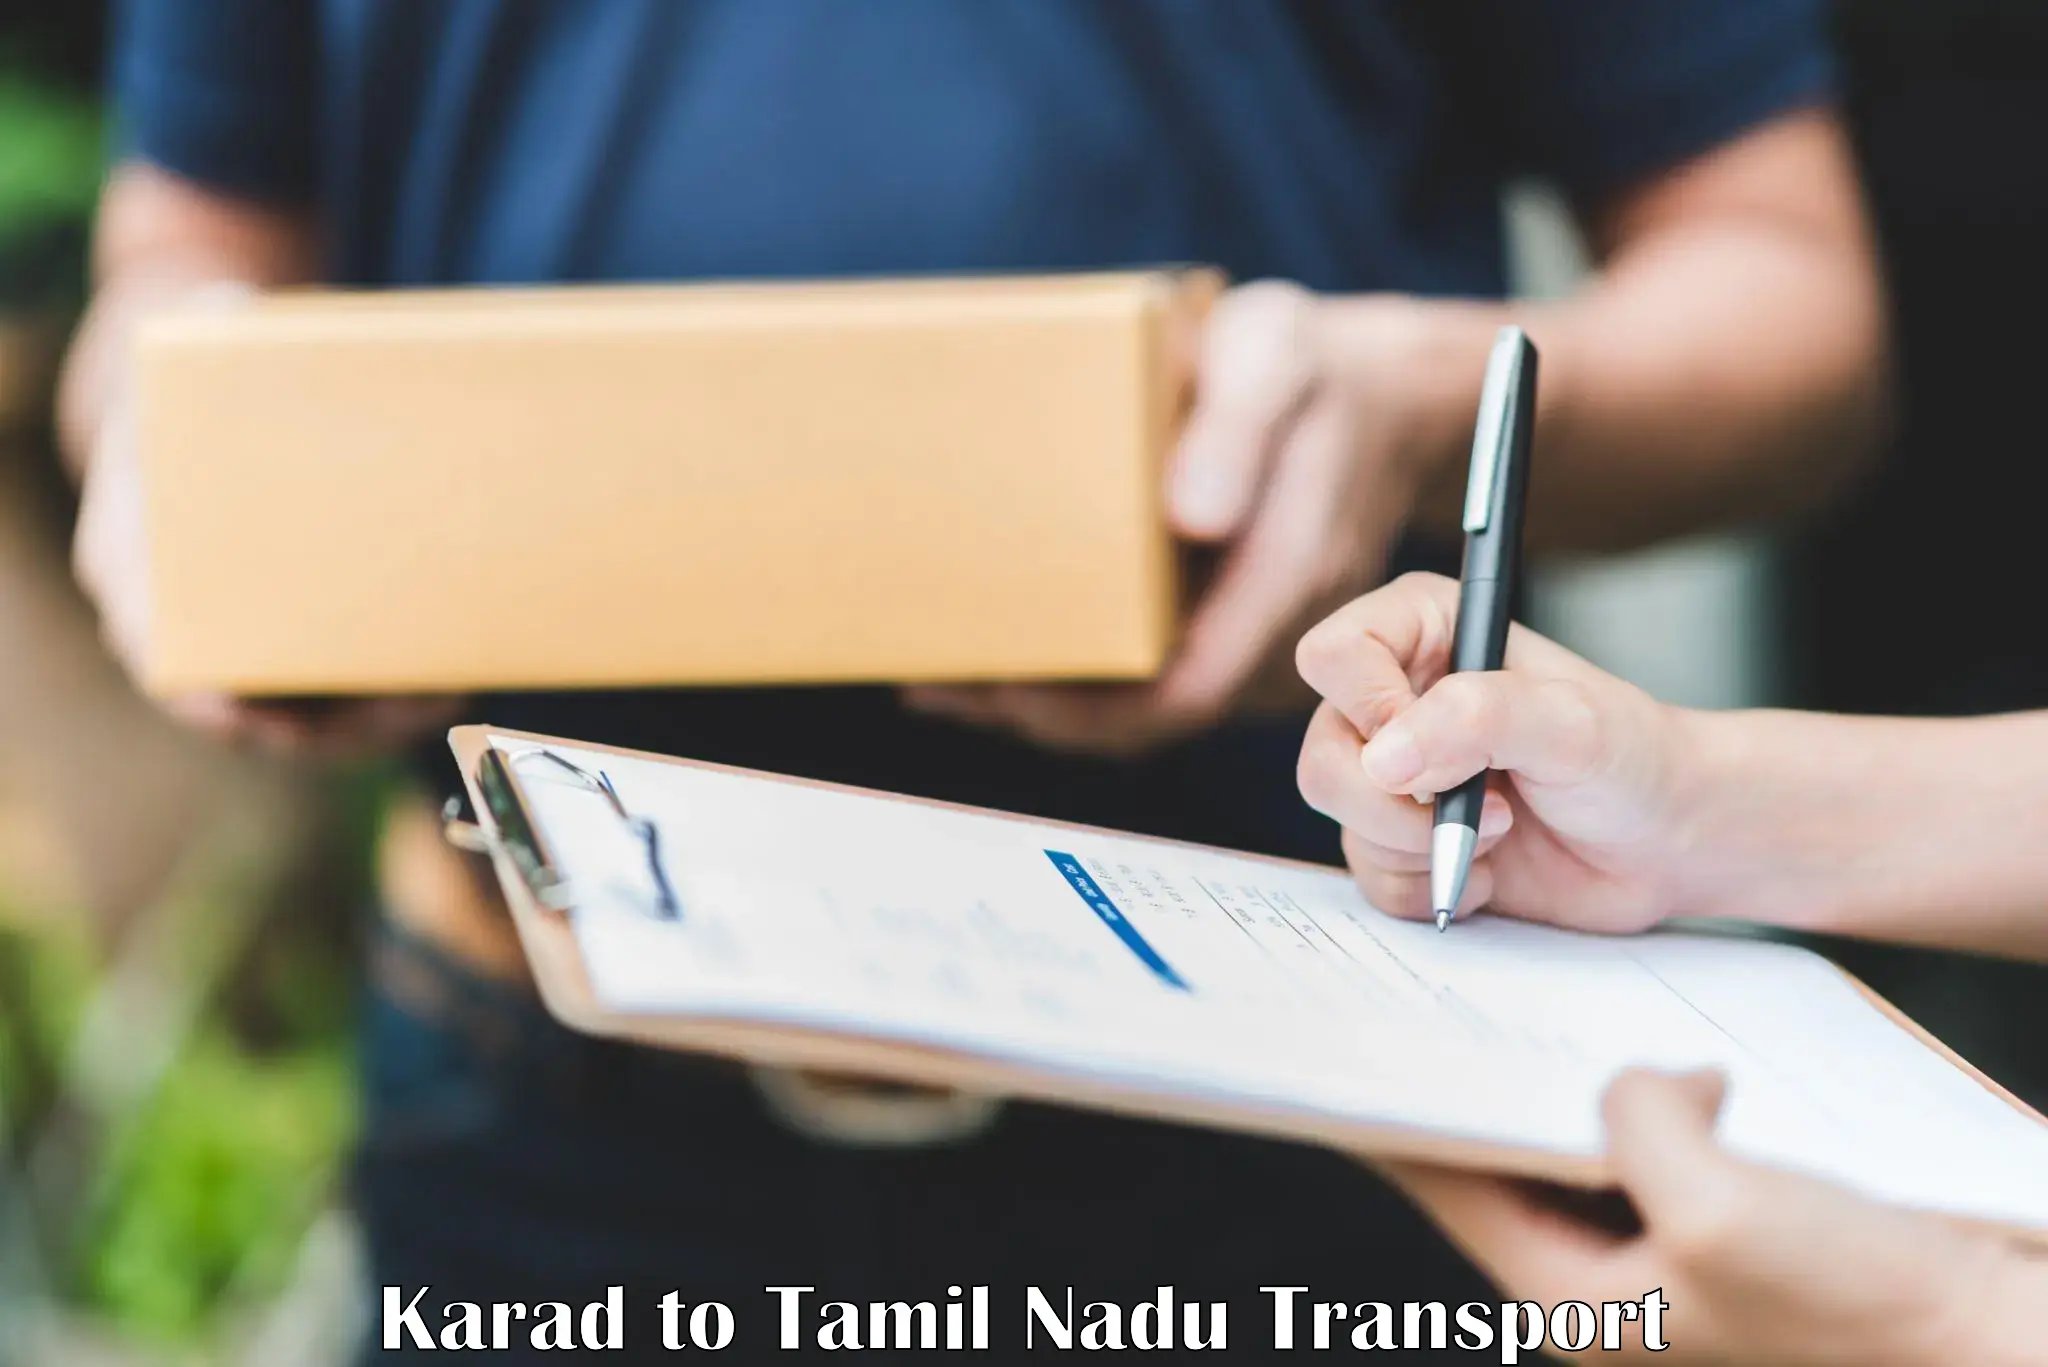 Inland transportation services Karad to Thiruvadanai